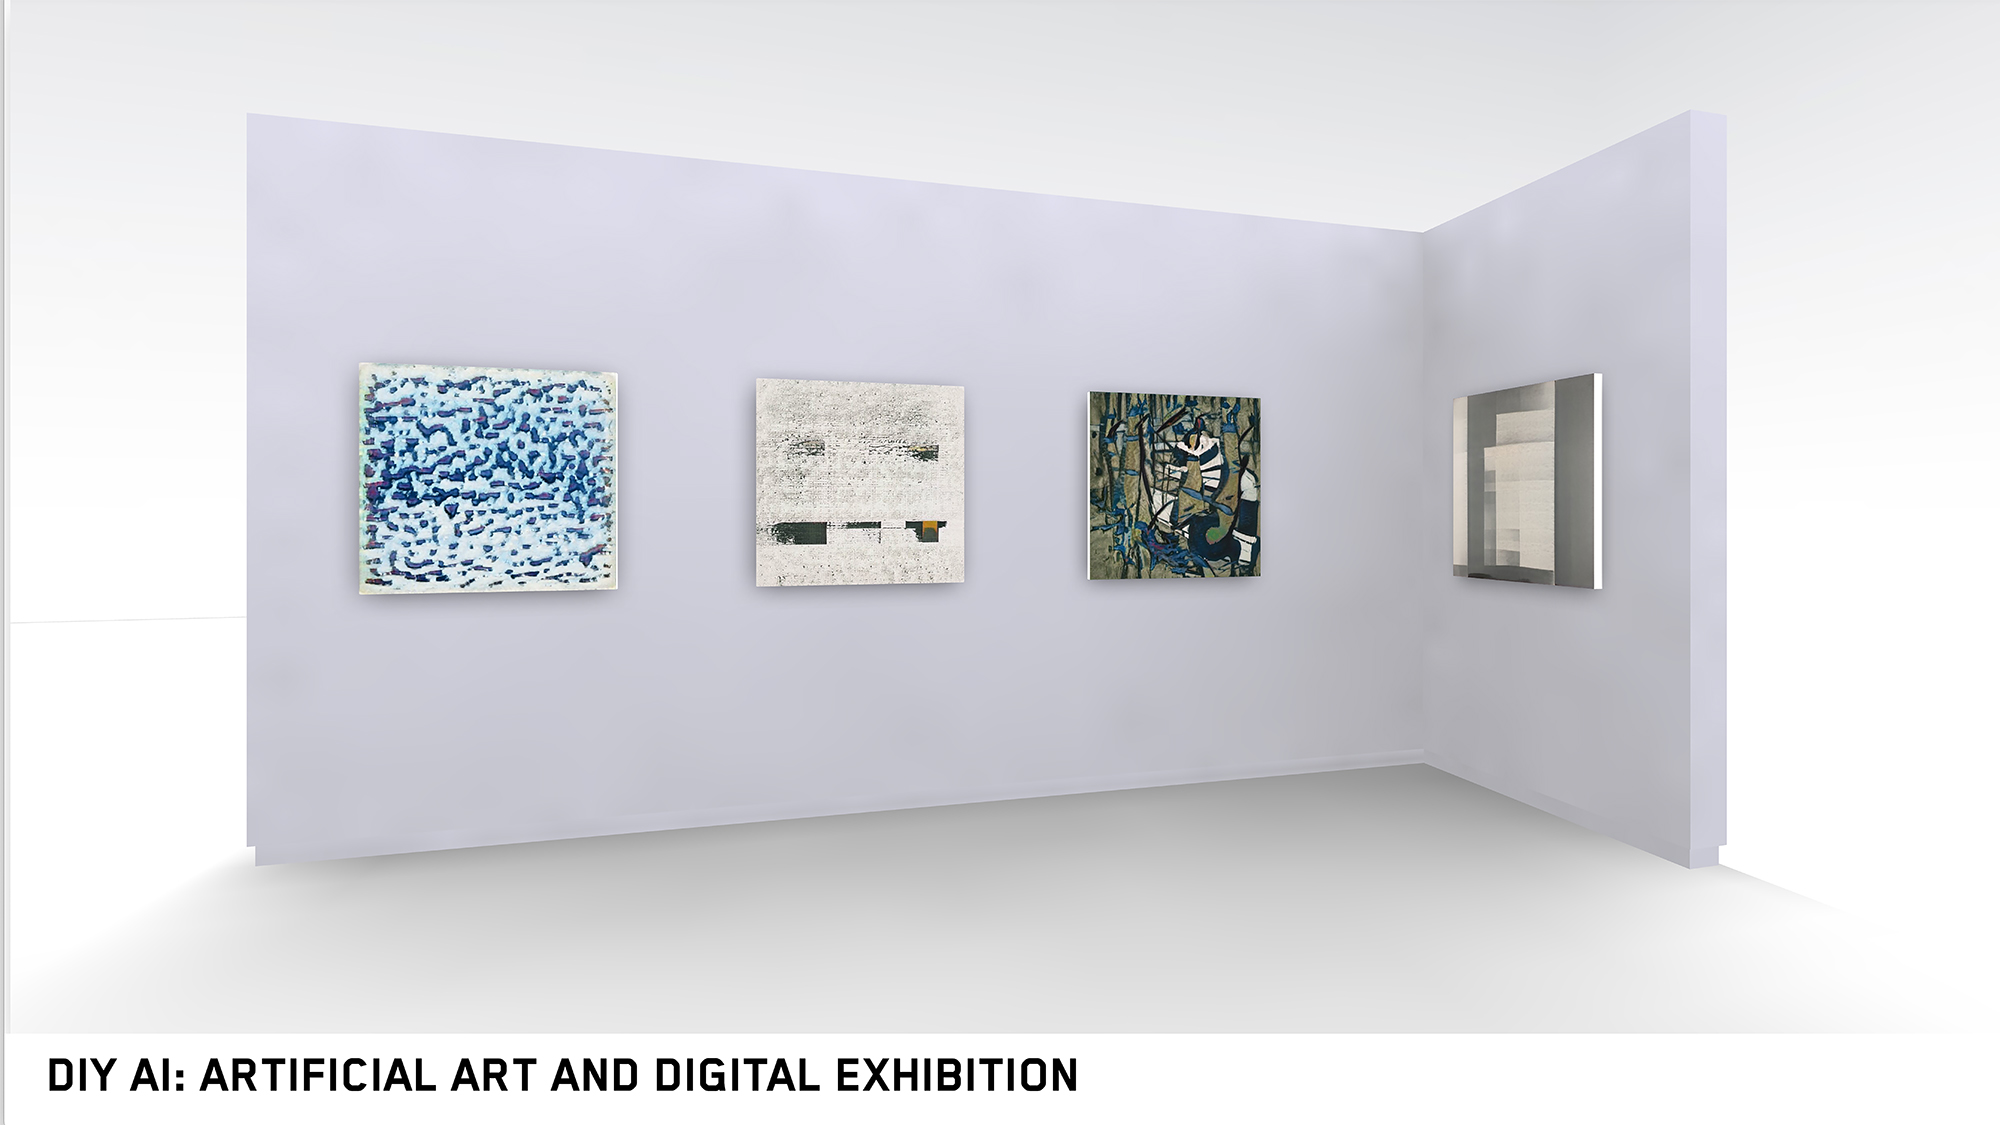 Die Abbildung zeigt eine Ecke von einem virtuellen Raum, in dem eine 3D-modellierte, hellgraue Wand steht. Auf dieser hängen vier sehr unterschiedliche abstrakte Bilder nebeneinander. Die Bildunterschrift ist „DIY AI: Artificial Art and Digital Exhibition“.